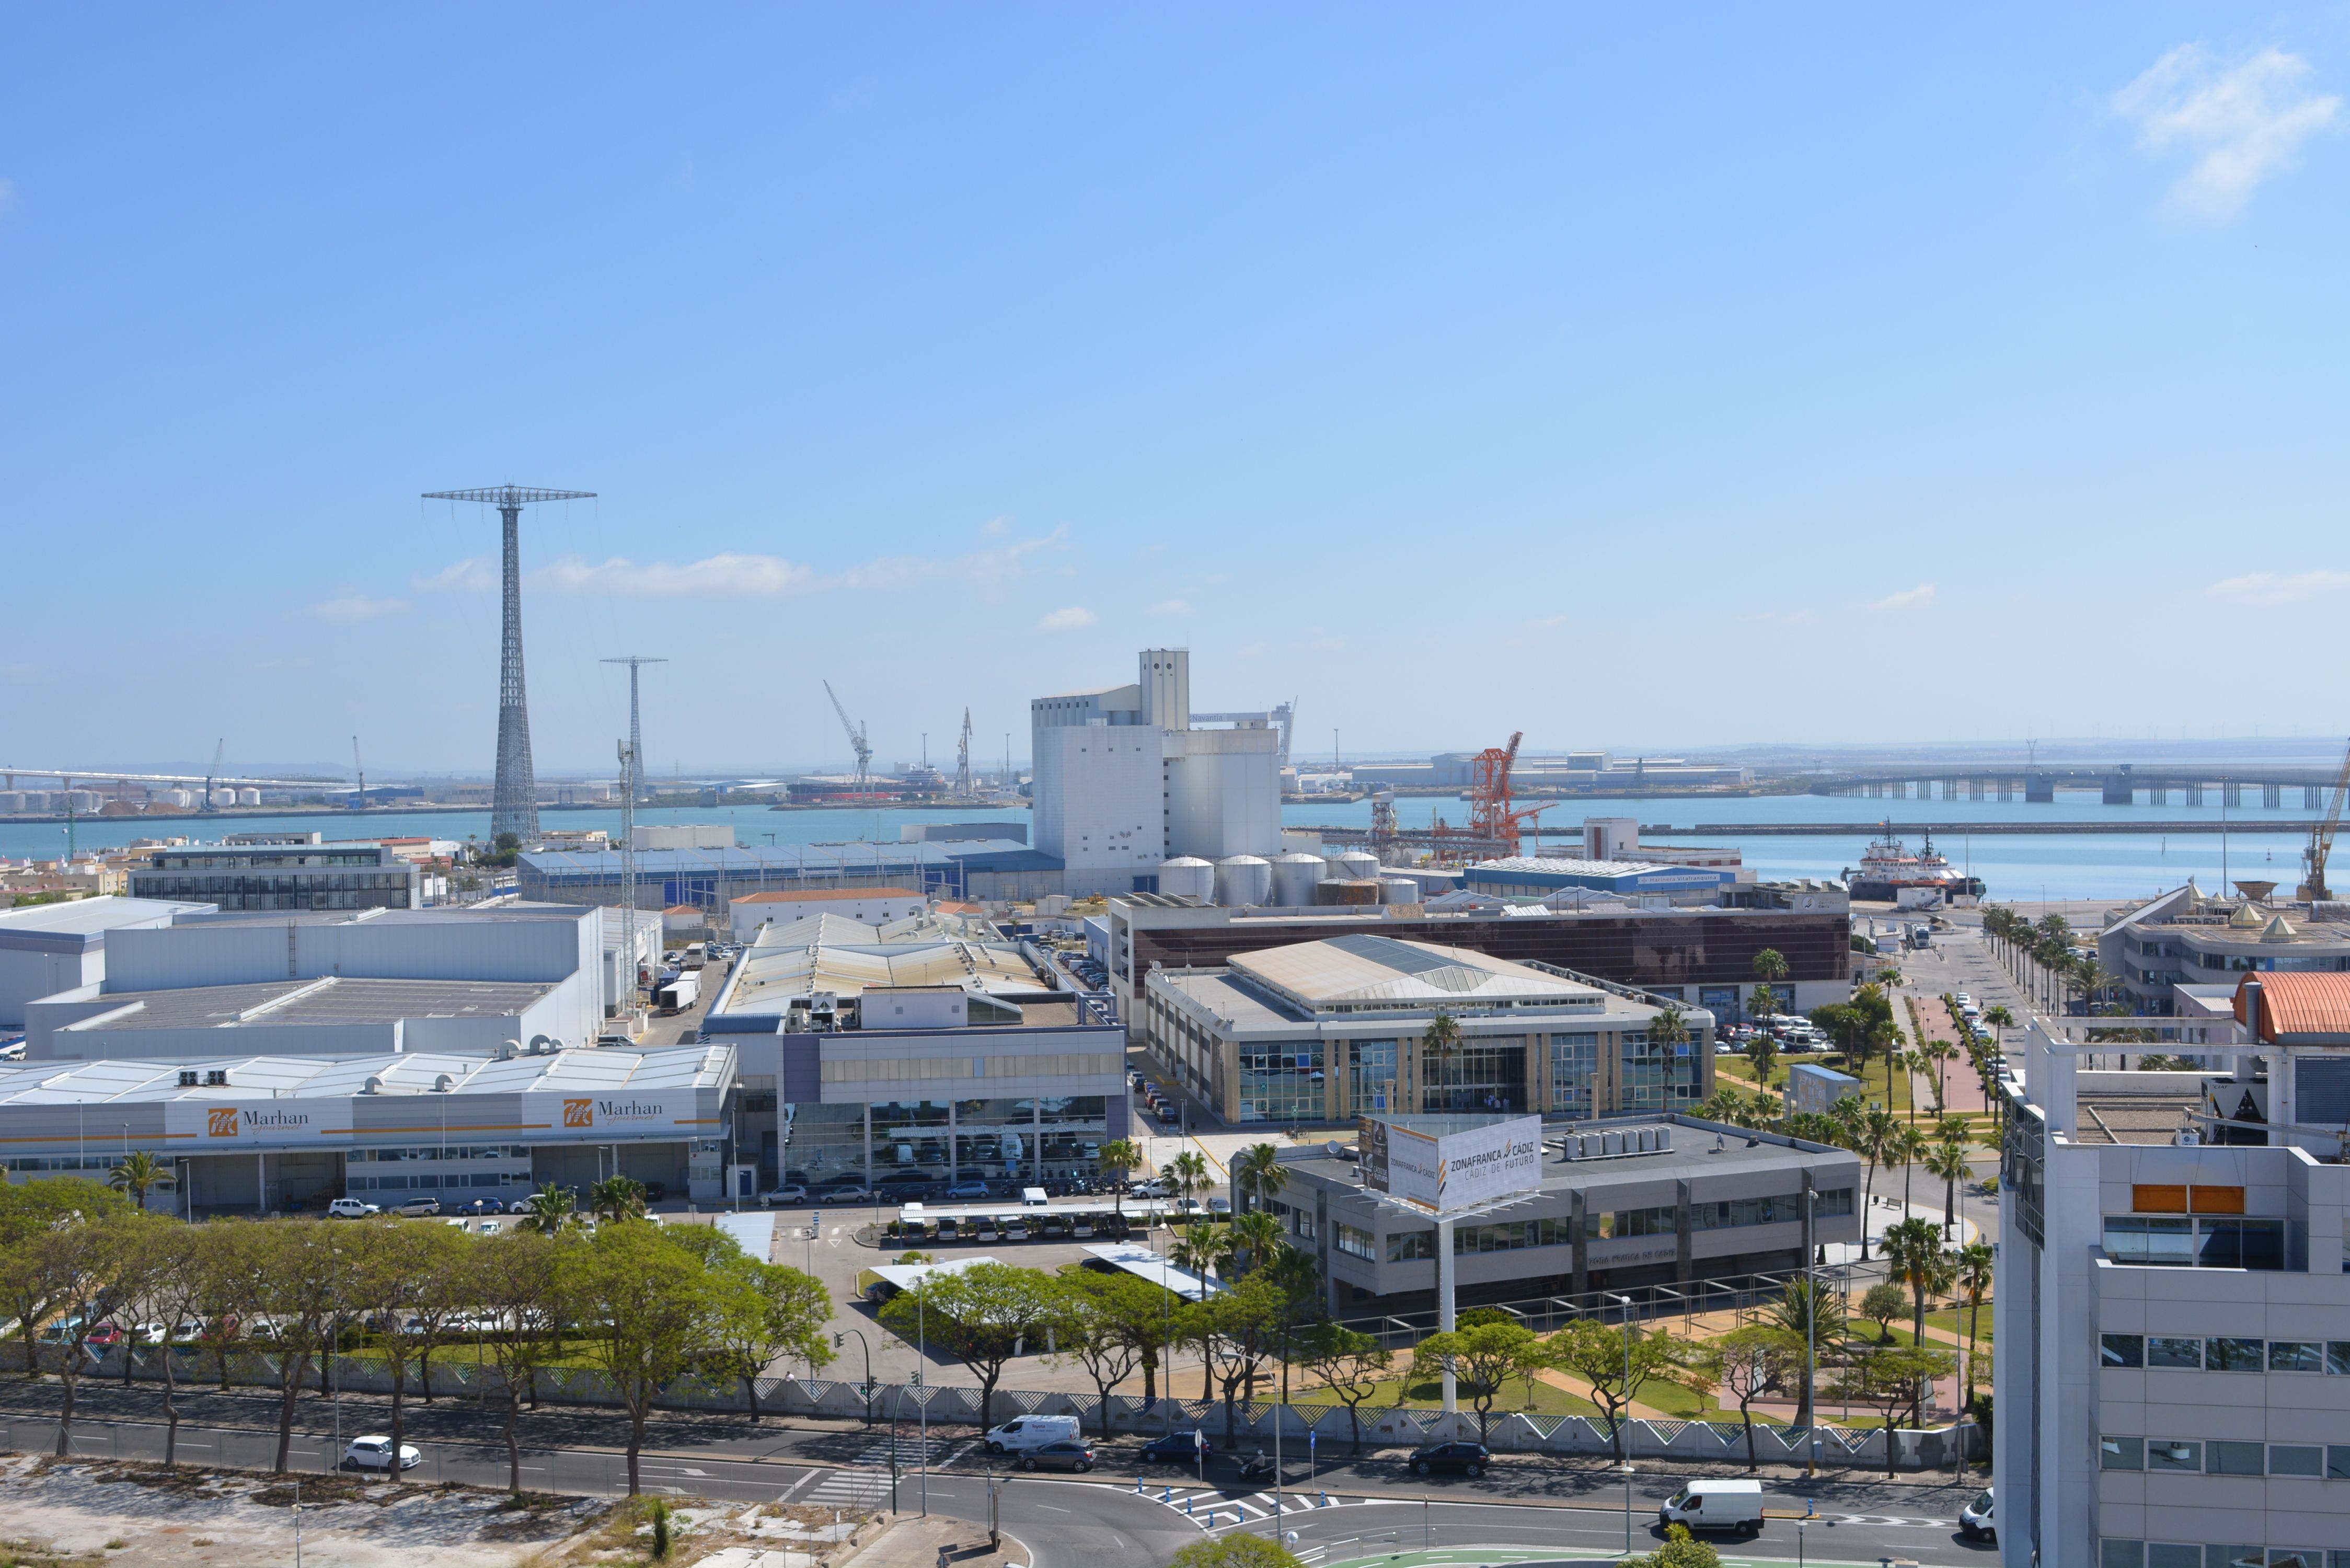 Una multinacional de ingeniería dará trabajo a 52 personas en Zona Franca de Cádiz. En la imagen, recinto de la Zona Franca de Cádiz.